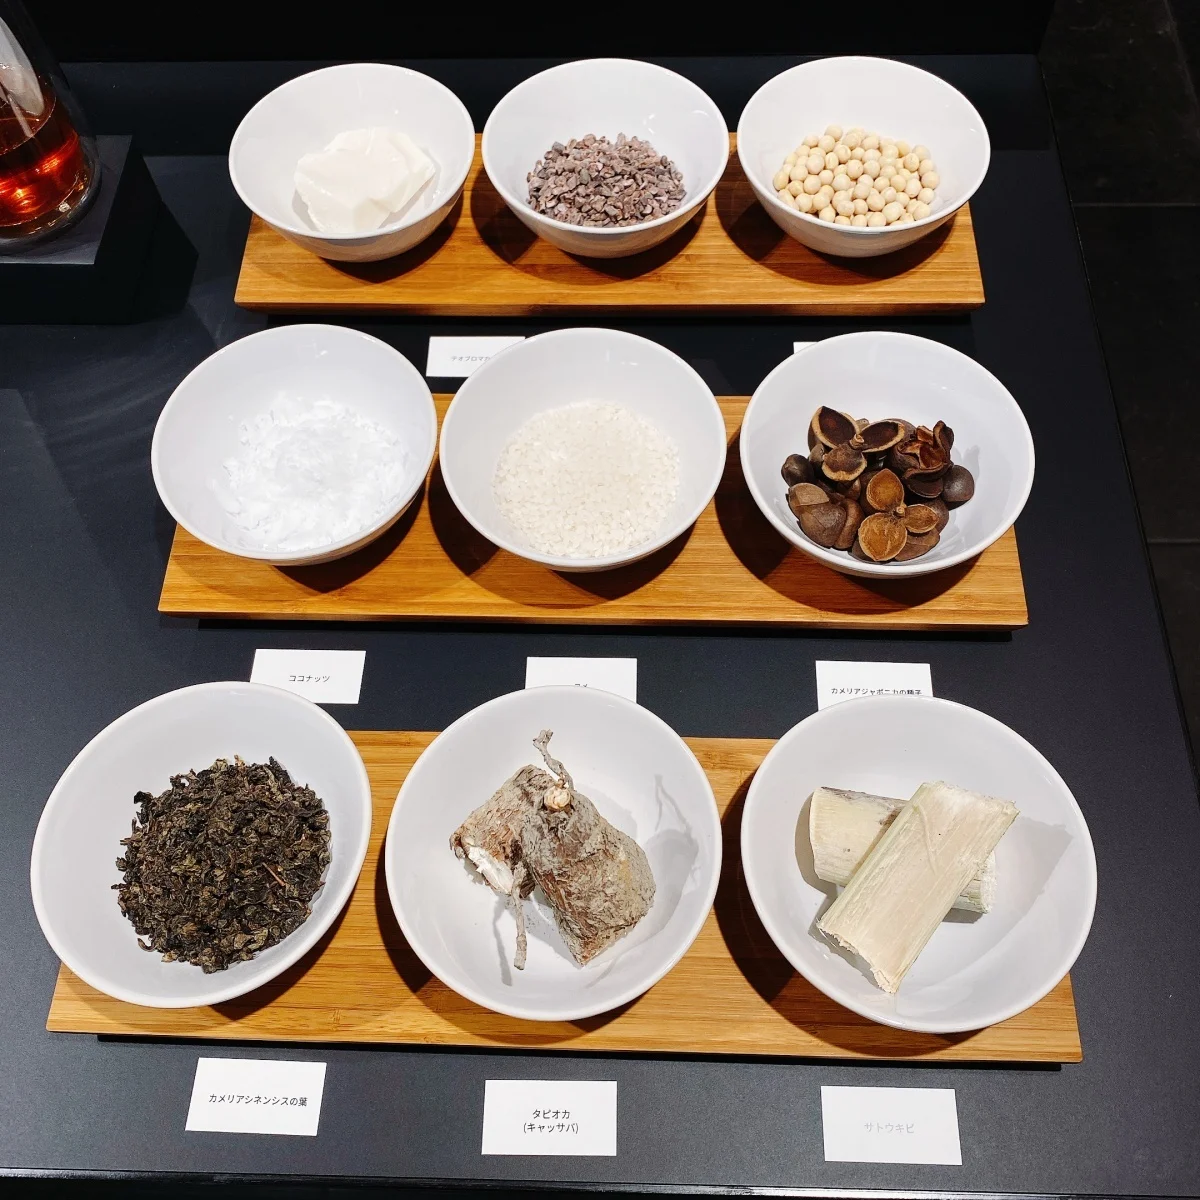 レルボラリオの「フォリエ ディ テ」にはツバキや米、大豆など日本人になじみが深い成分がたくさん採用されています